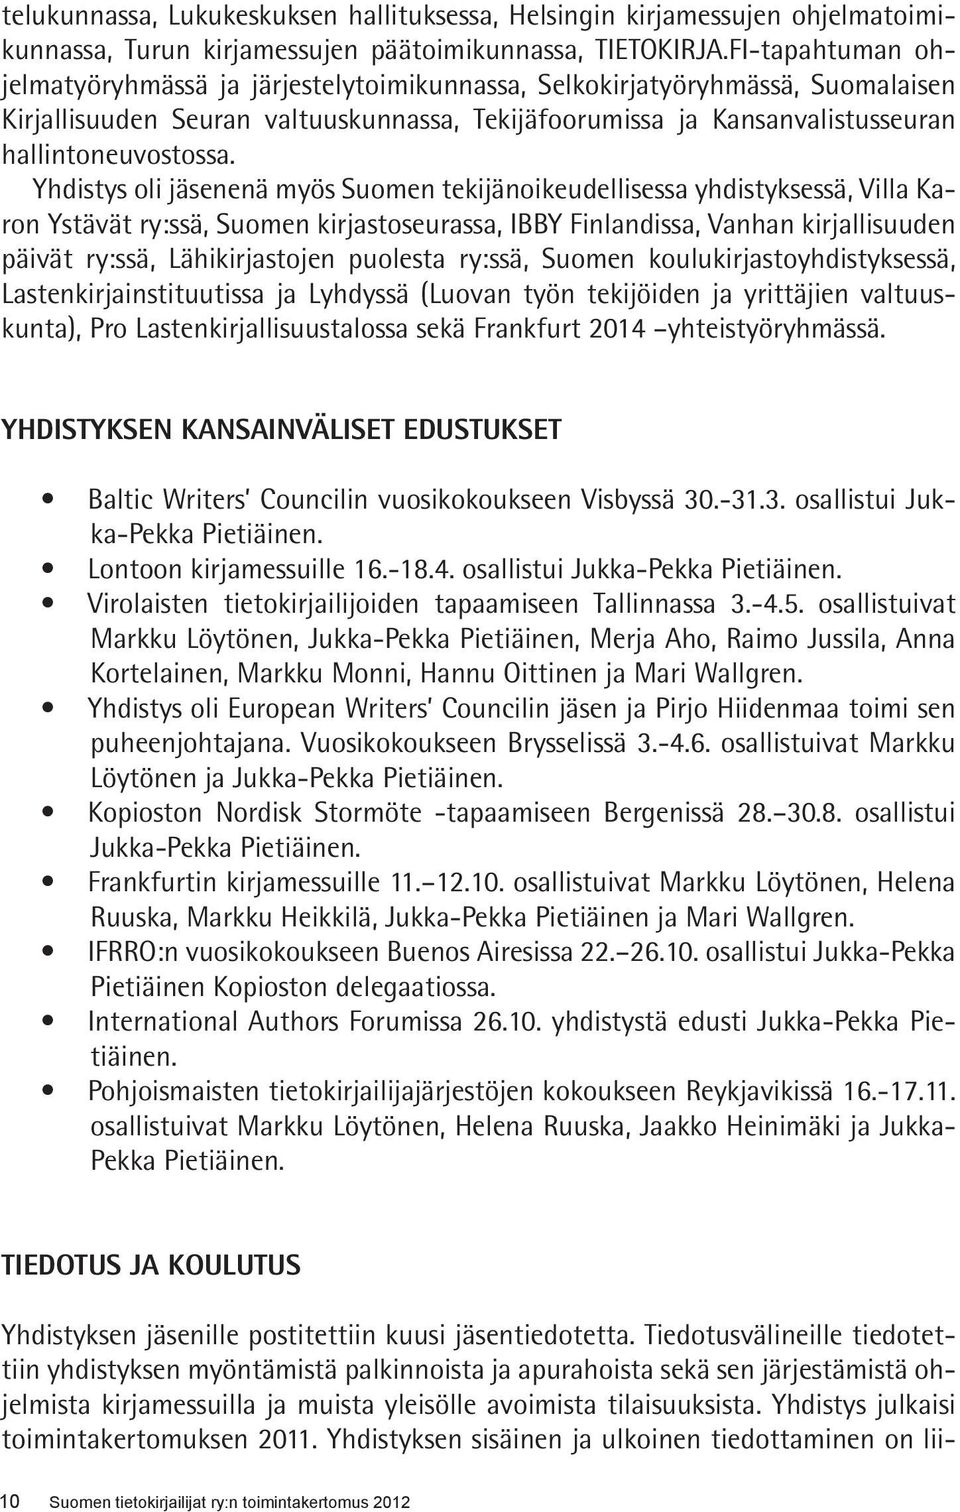 Yhdistys oli jäsenenä myös Suomen tekijänoikeudellisessa yhdistyksessä, Villa Karon Ystävät ry:ssä, Suomen kirjastoseurassa, IBBY Finlandissa, Vanhan kirjallisuuden päivät ry:ssä, Lähikirjastojen